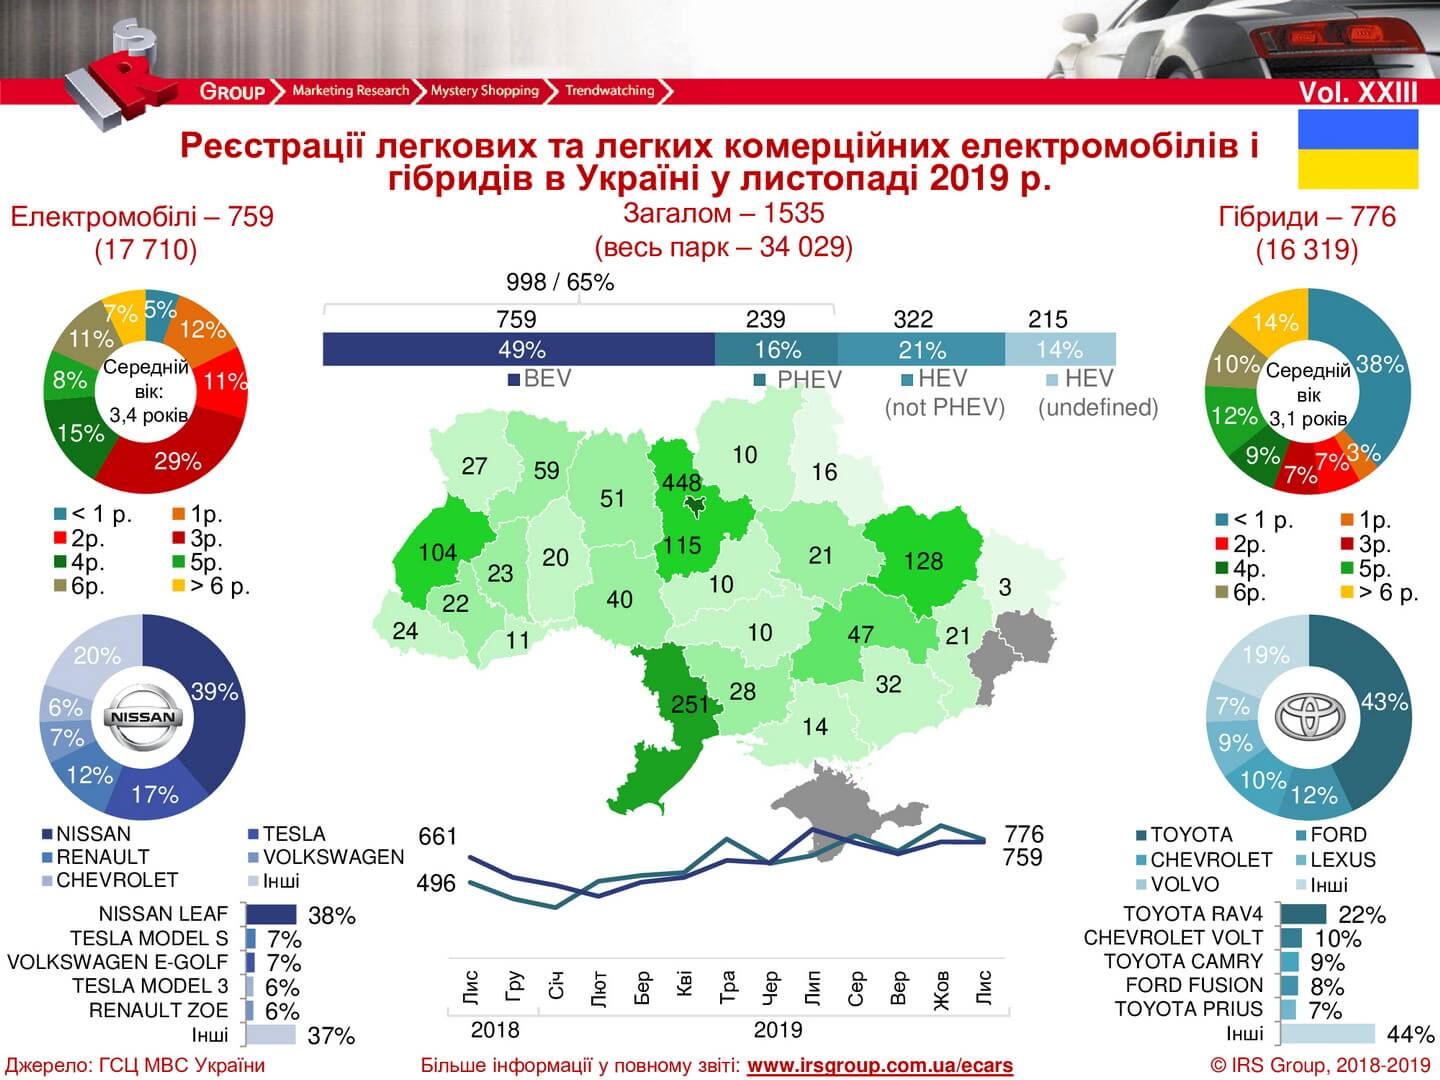 Электромобильный автопарк Украины на 1 декабря 2019 года превысил 34 000 единиц